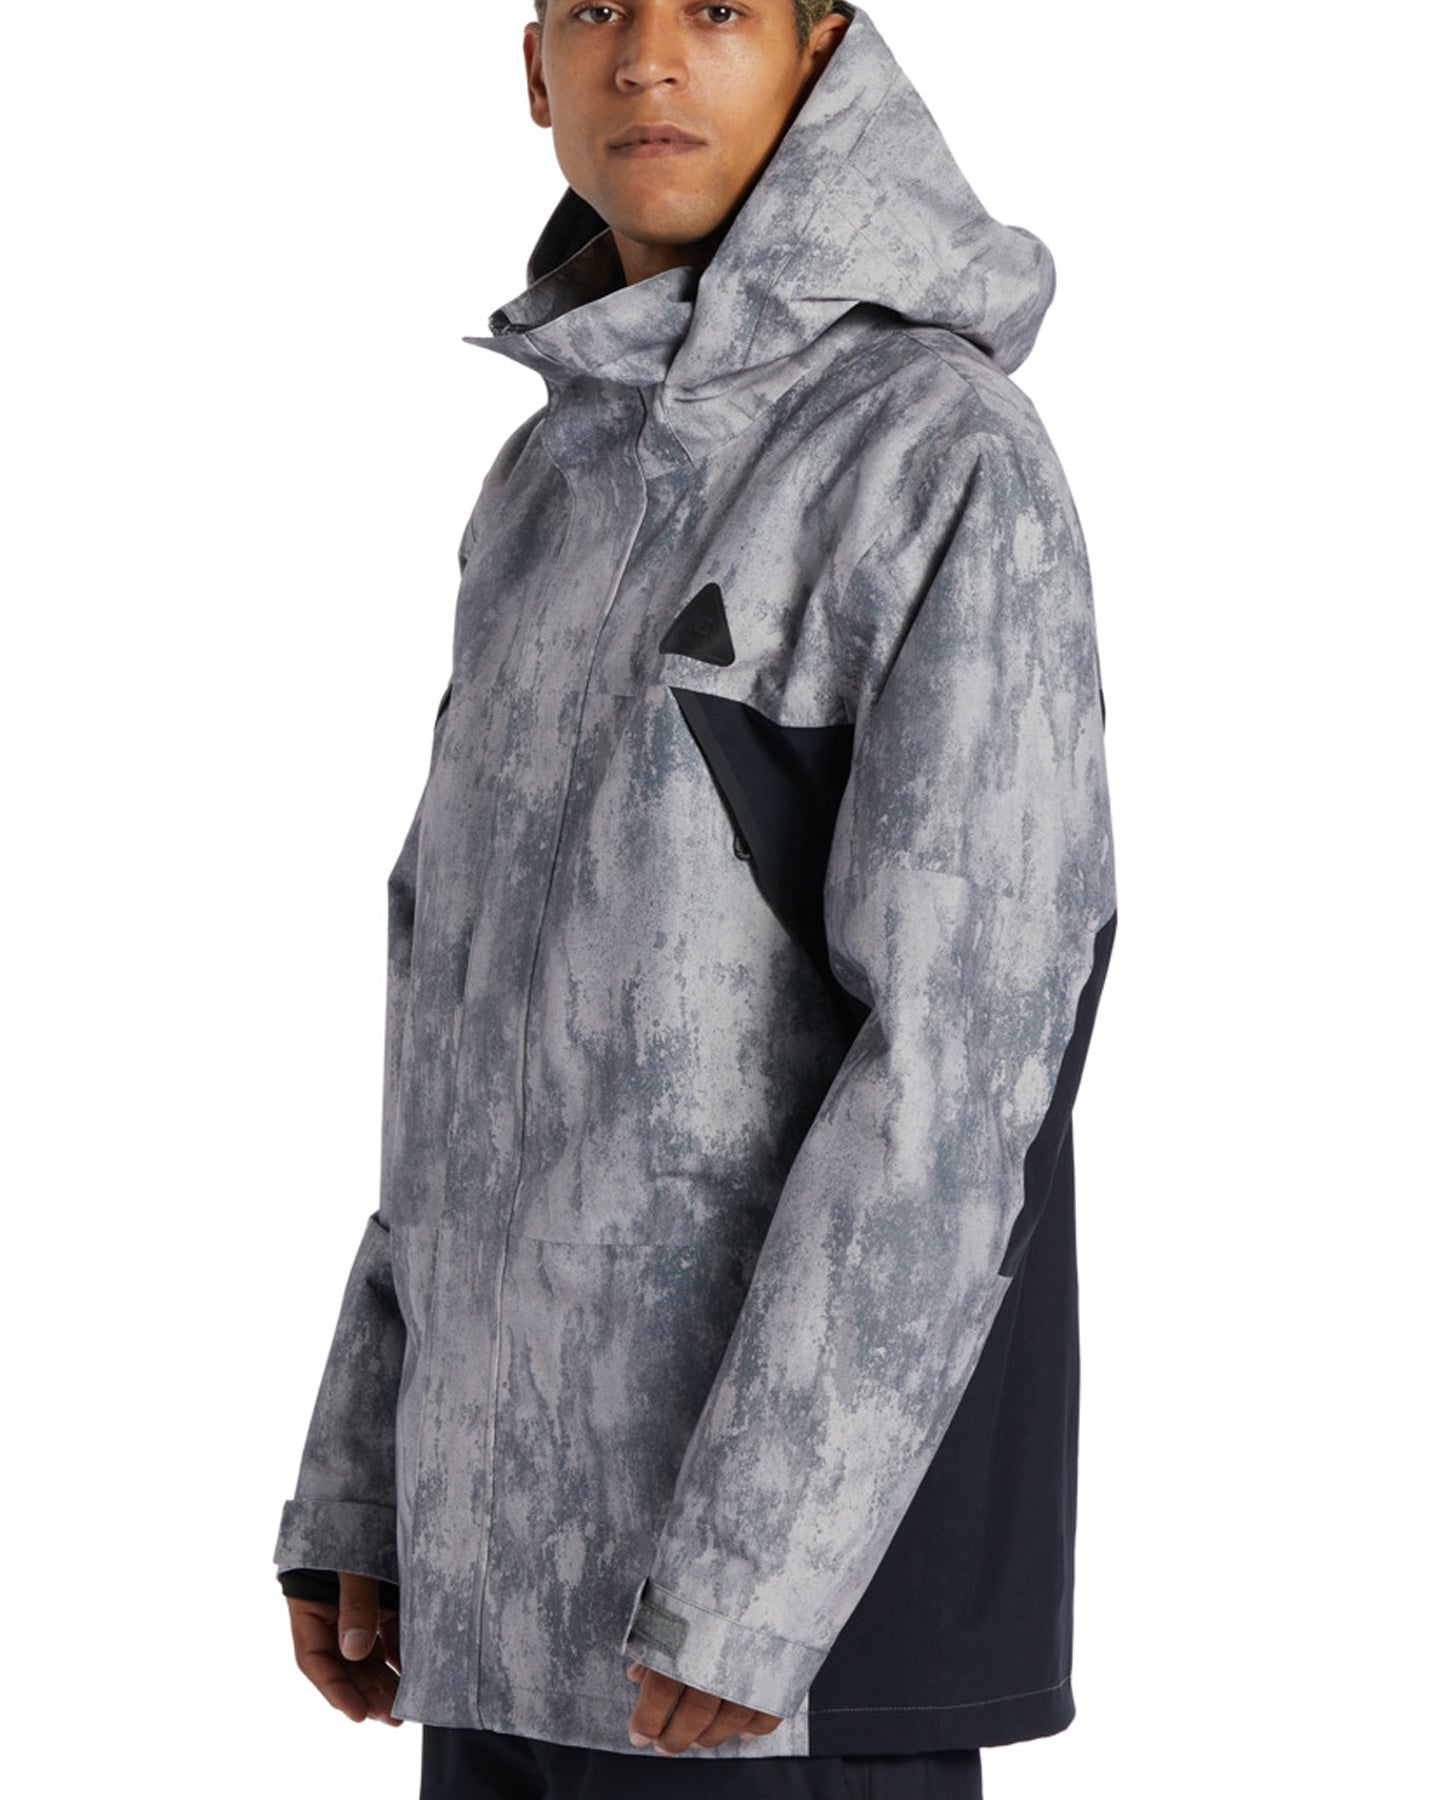 DC Command 45K Technical Snow Jacket - Grey Stone Men's Snow Jackets - Trojan Wake Ski Snow